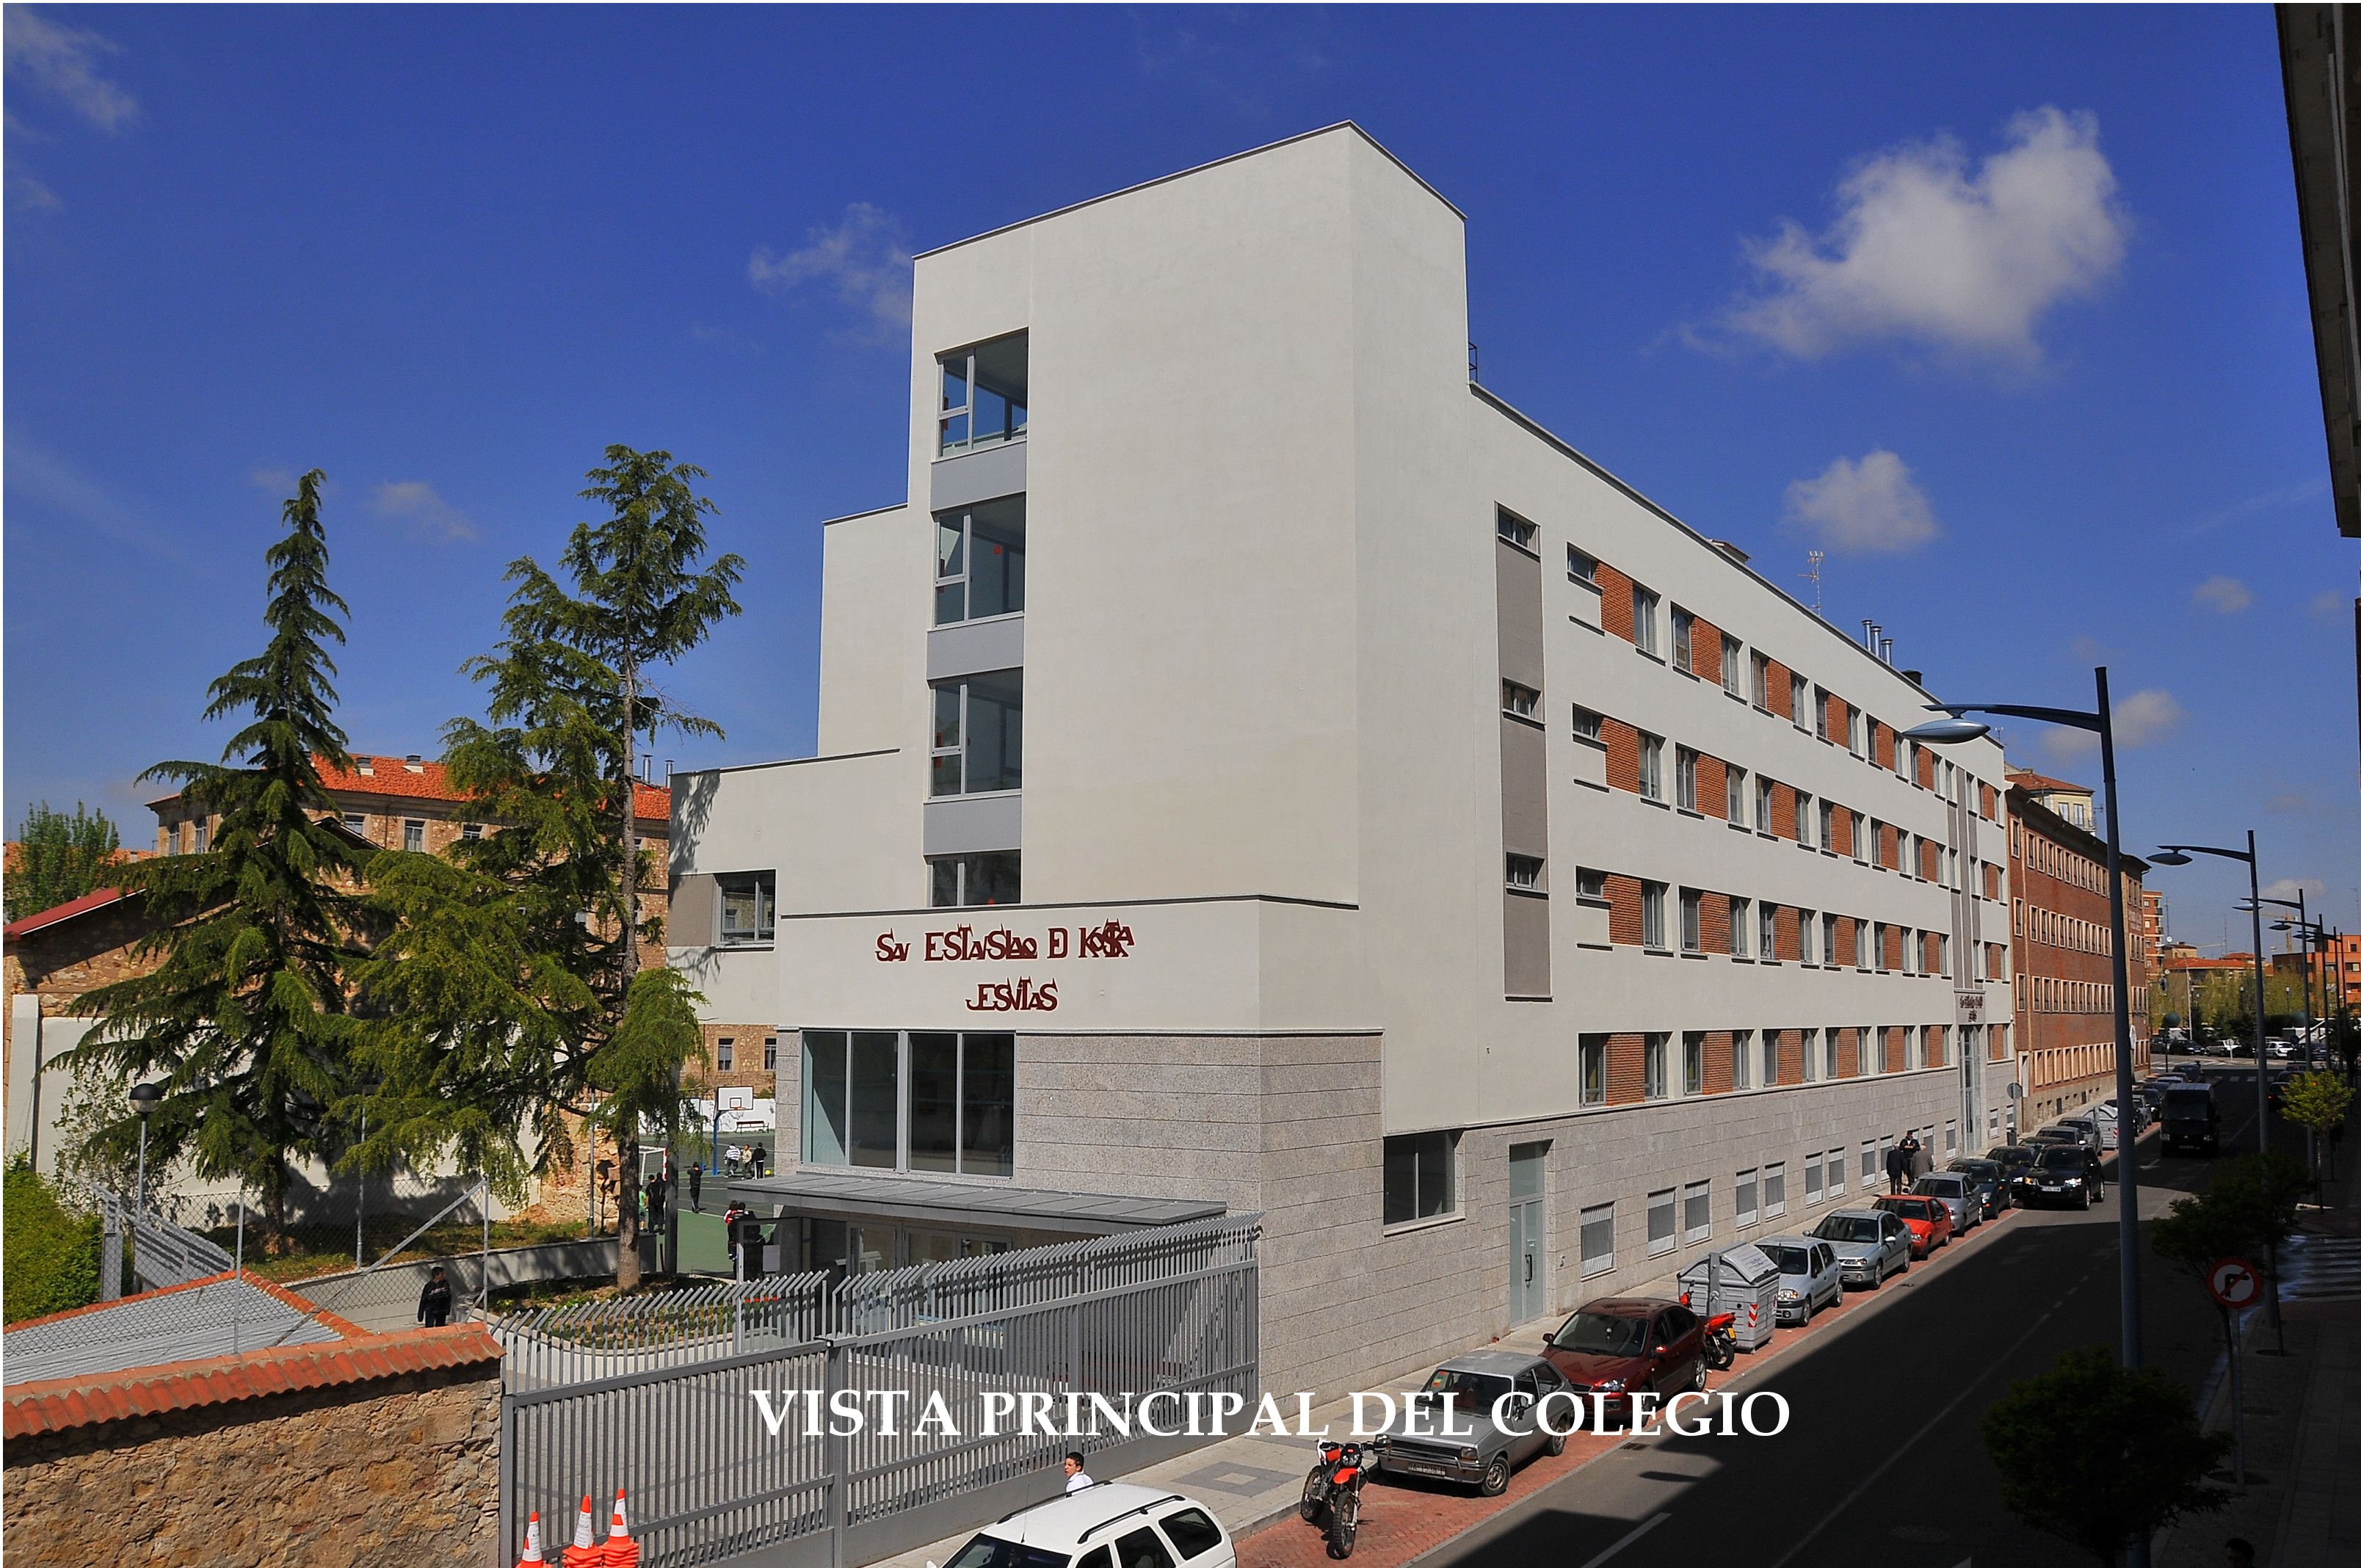  Colegio San Estanislao de Kostka (1) 